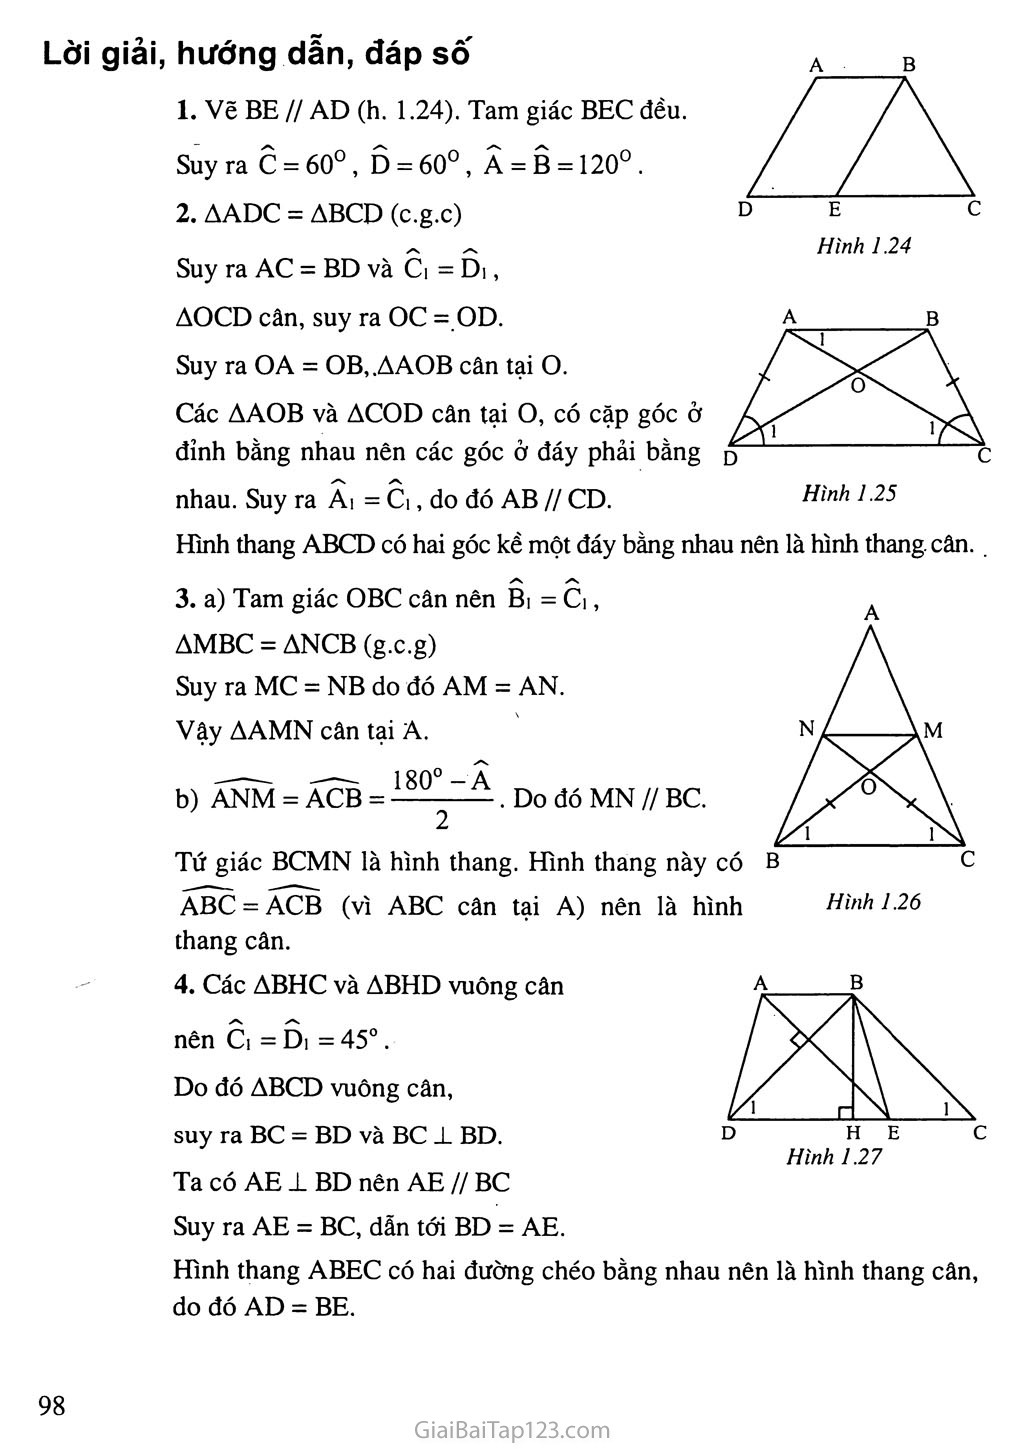 Tính diện tích hình thang ABCD có diện tích tam giác AOD  DOC như hình vẽ   Olm